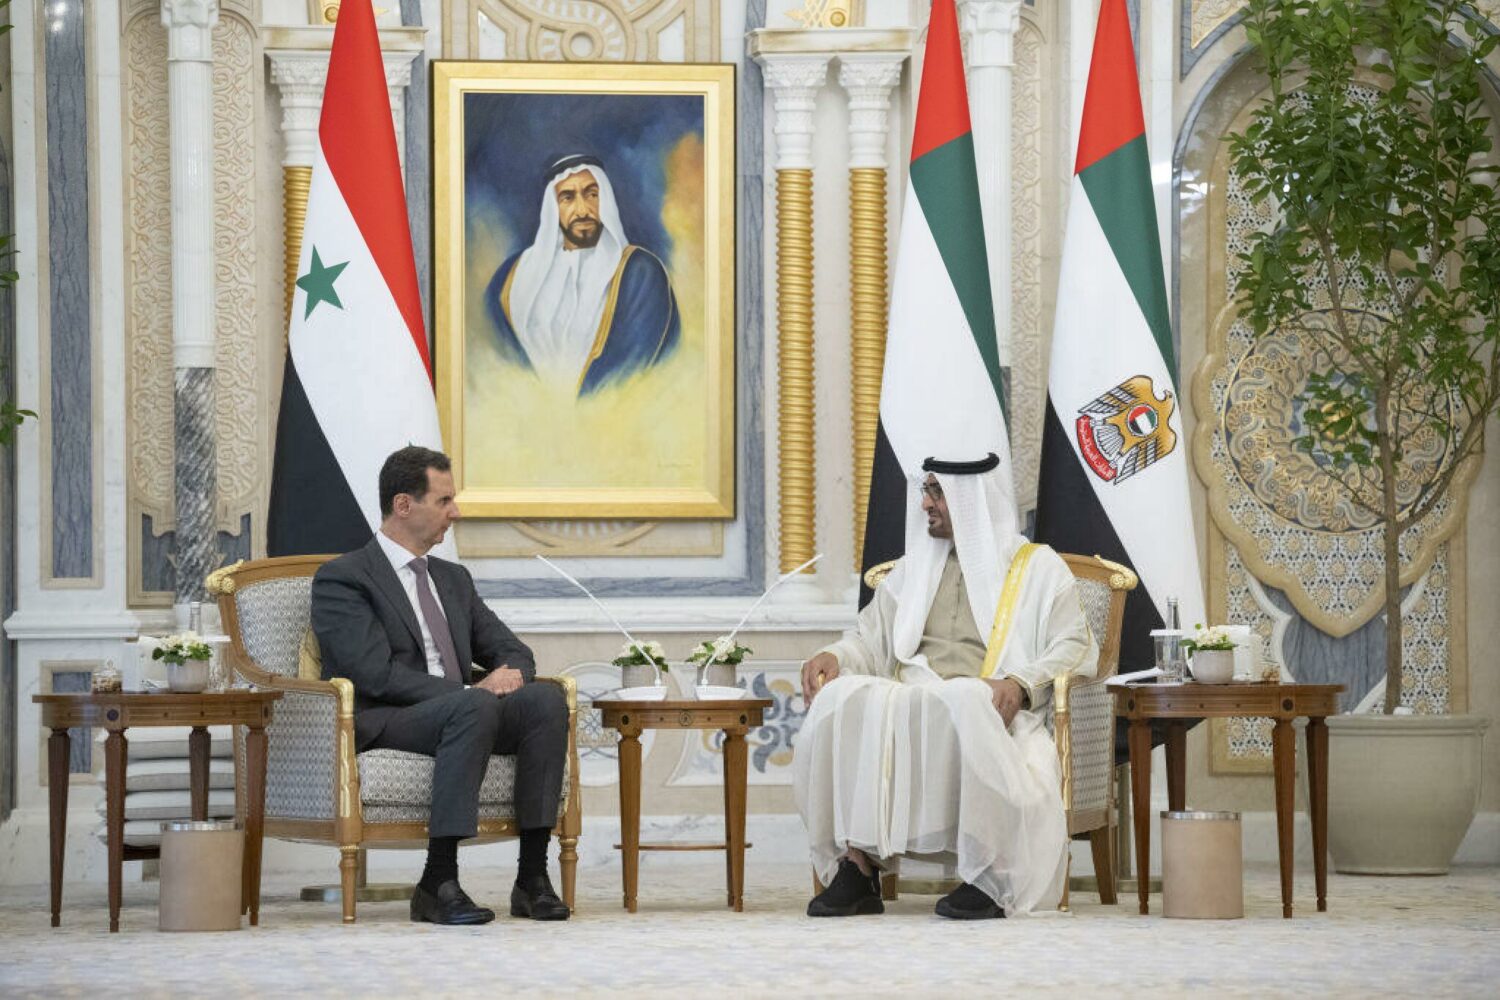 رئيس الإمارات، محمد بن زايد آل نهيان (إلى اليمين) يلتقي بالرئيس السوري بشار الأسد (يسار) في قصر الوعان (قصر الأمة) في أبو ظبي، الإمارات العربية المتحدة في 19 مارس 2023. (تصوير الديوان الرئاسي الإماراتي / غيتي)